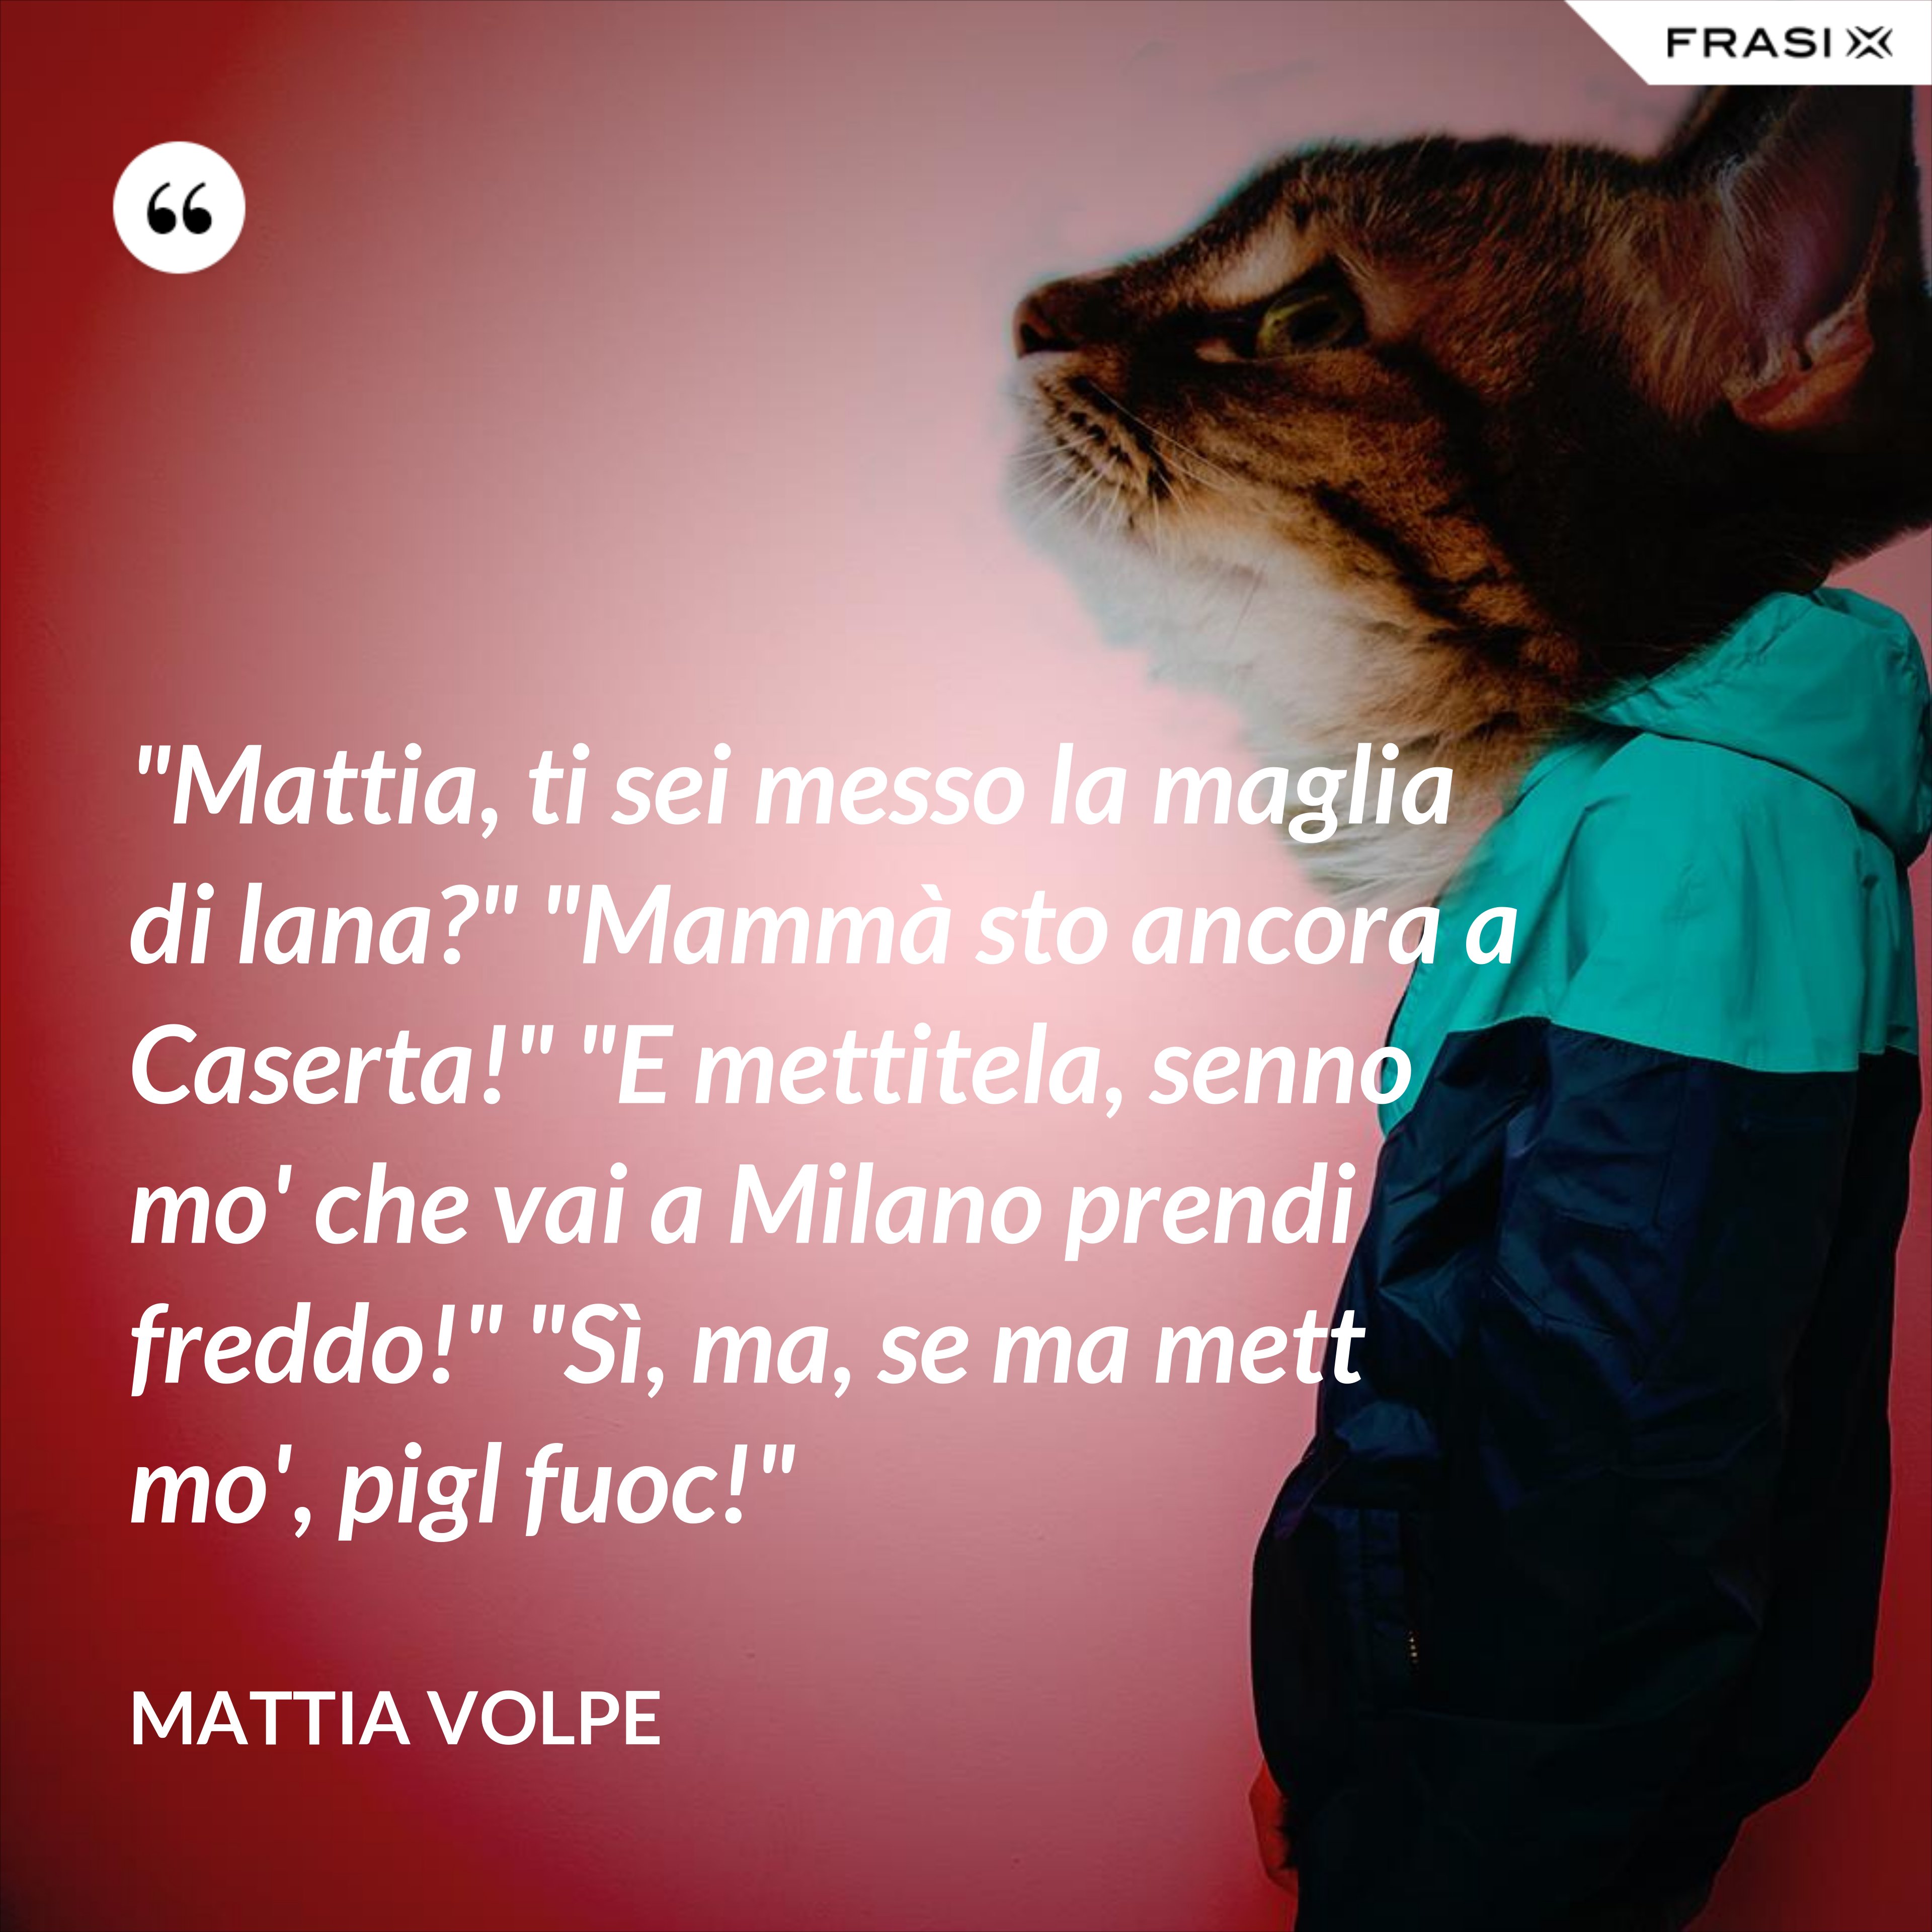 "Mattia, ti sei messo la maglia di lana?" "Mammà sto ancora a Caserta!" "E mettitela, senno mo' che vai a Milano prendi freddo!" "Sì, ma, se ma mett mo', pigl fuoc!" - Mattia Volpe